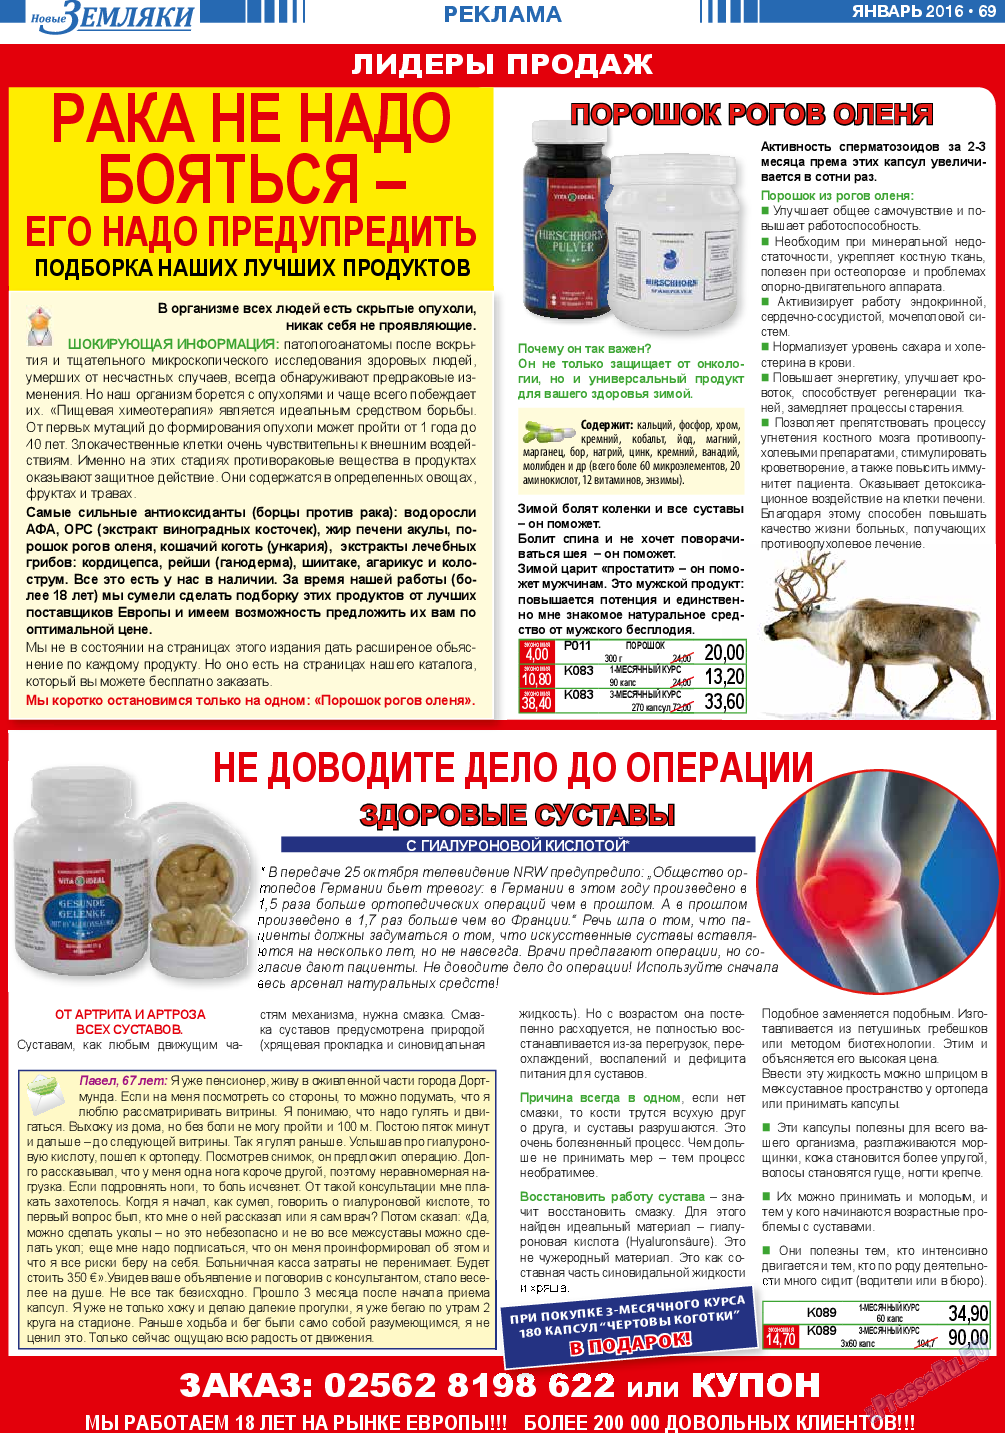 Новые Земляки, газета. 2016 №1 стр.69